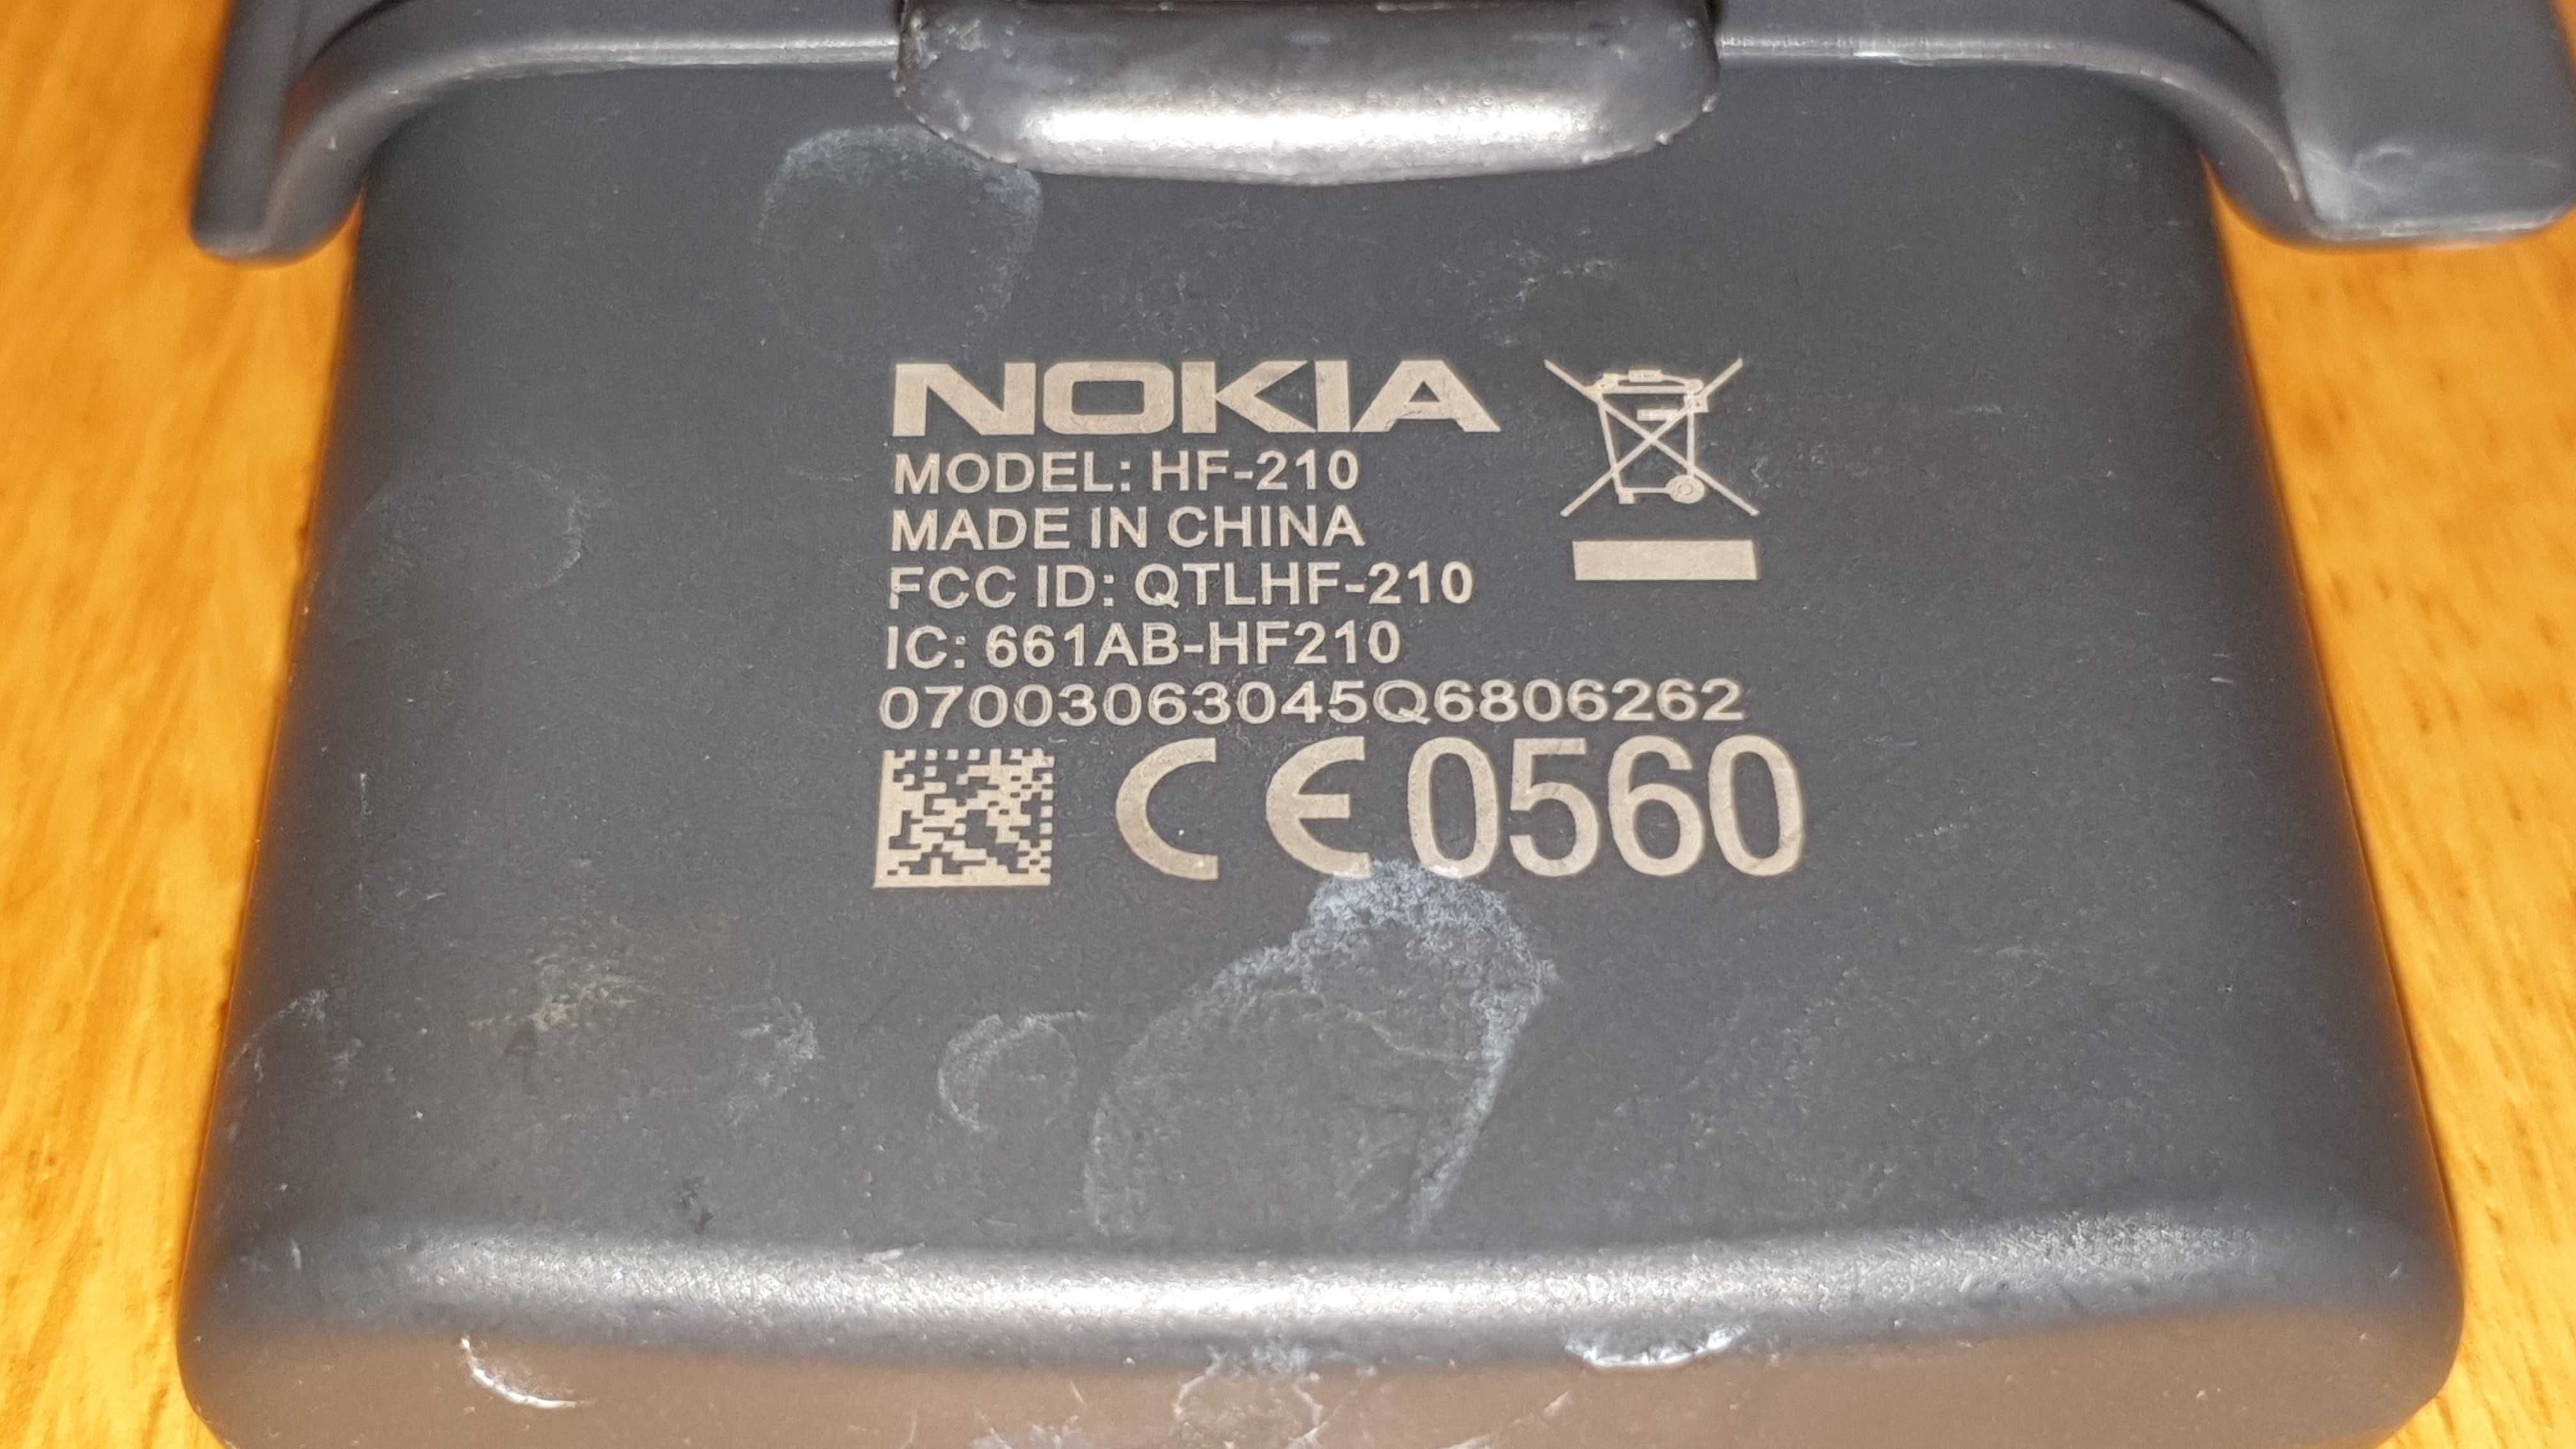 Zestaw głośnomówiący Nokia